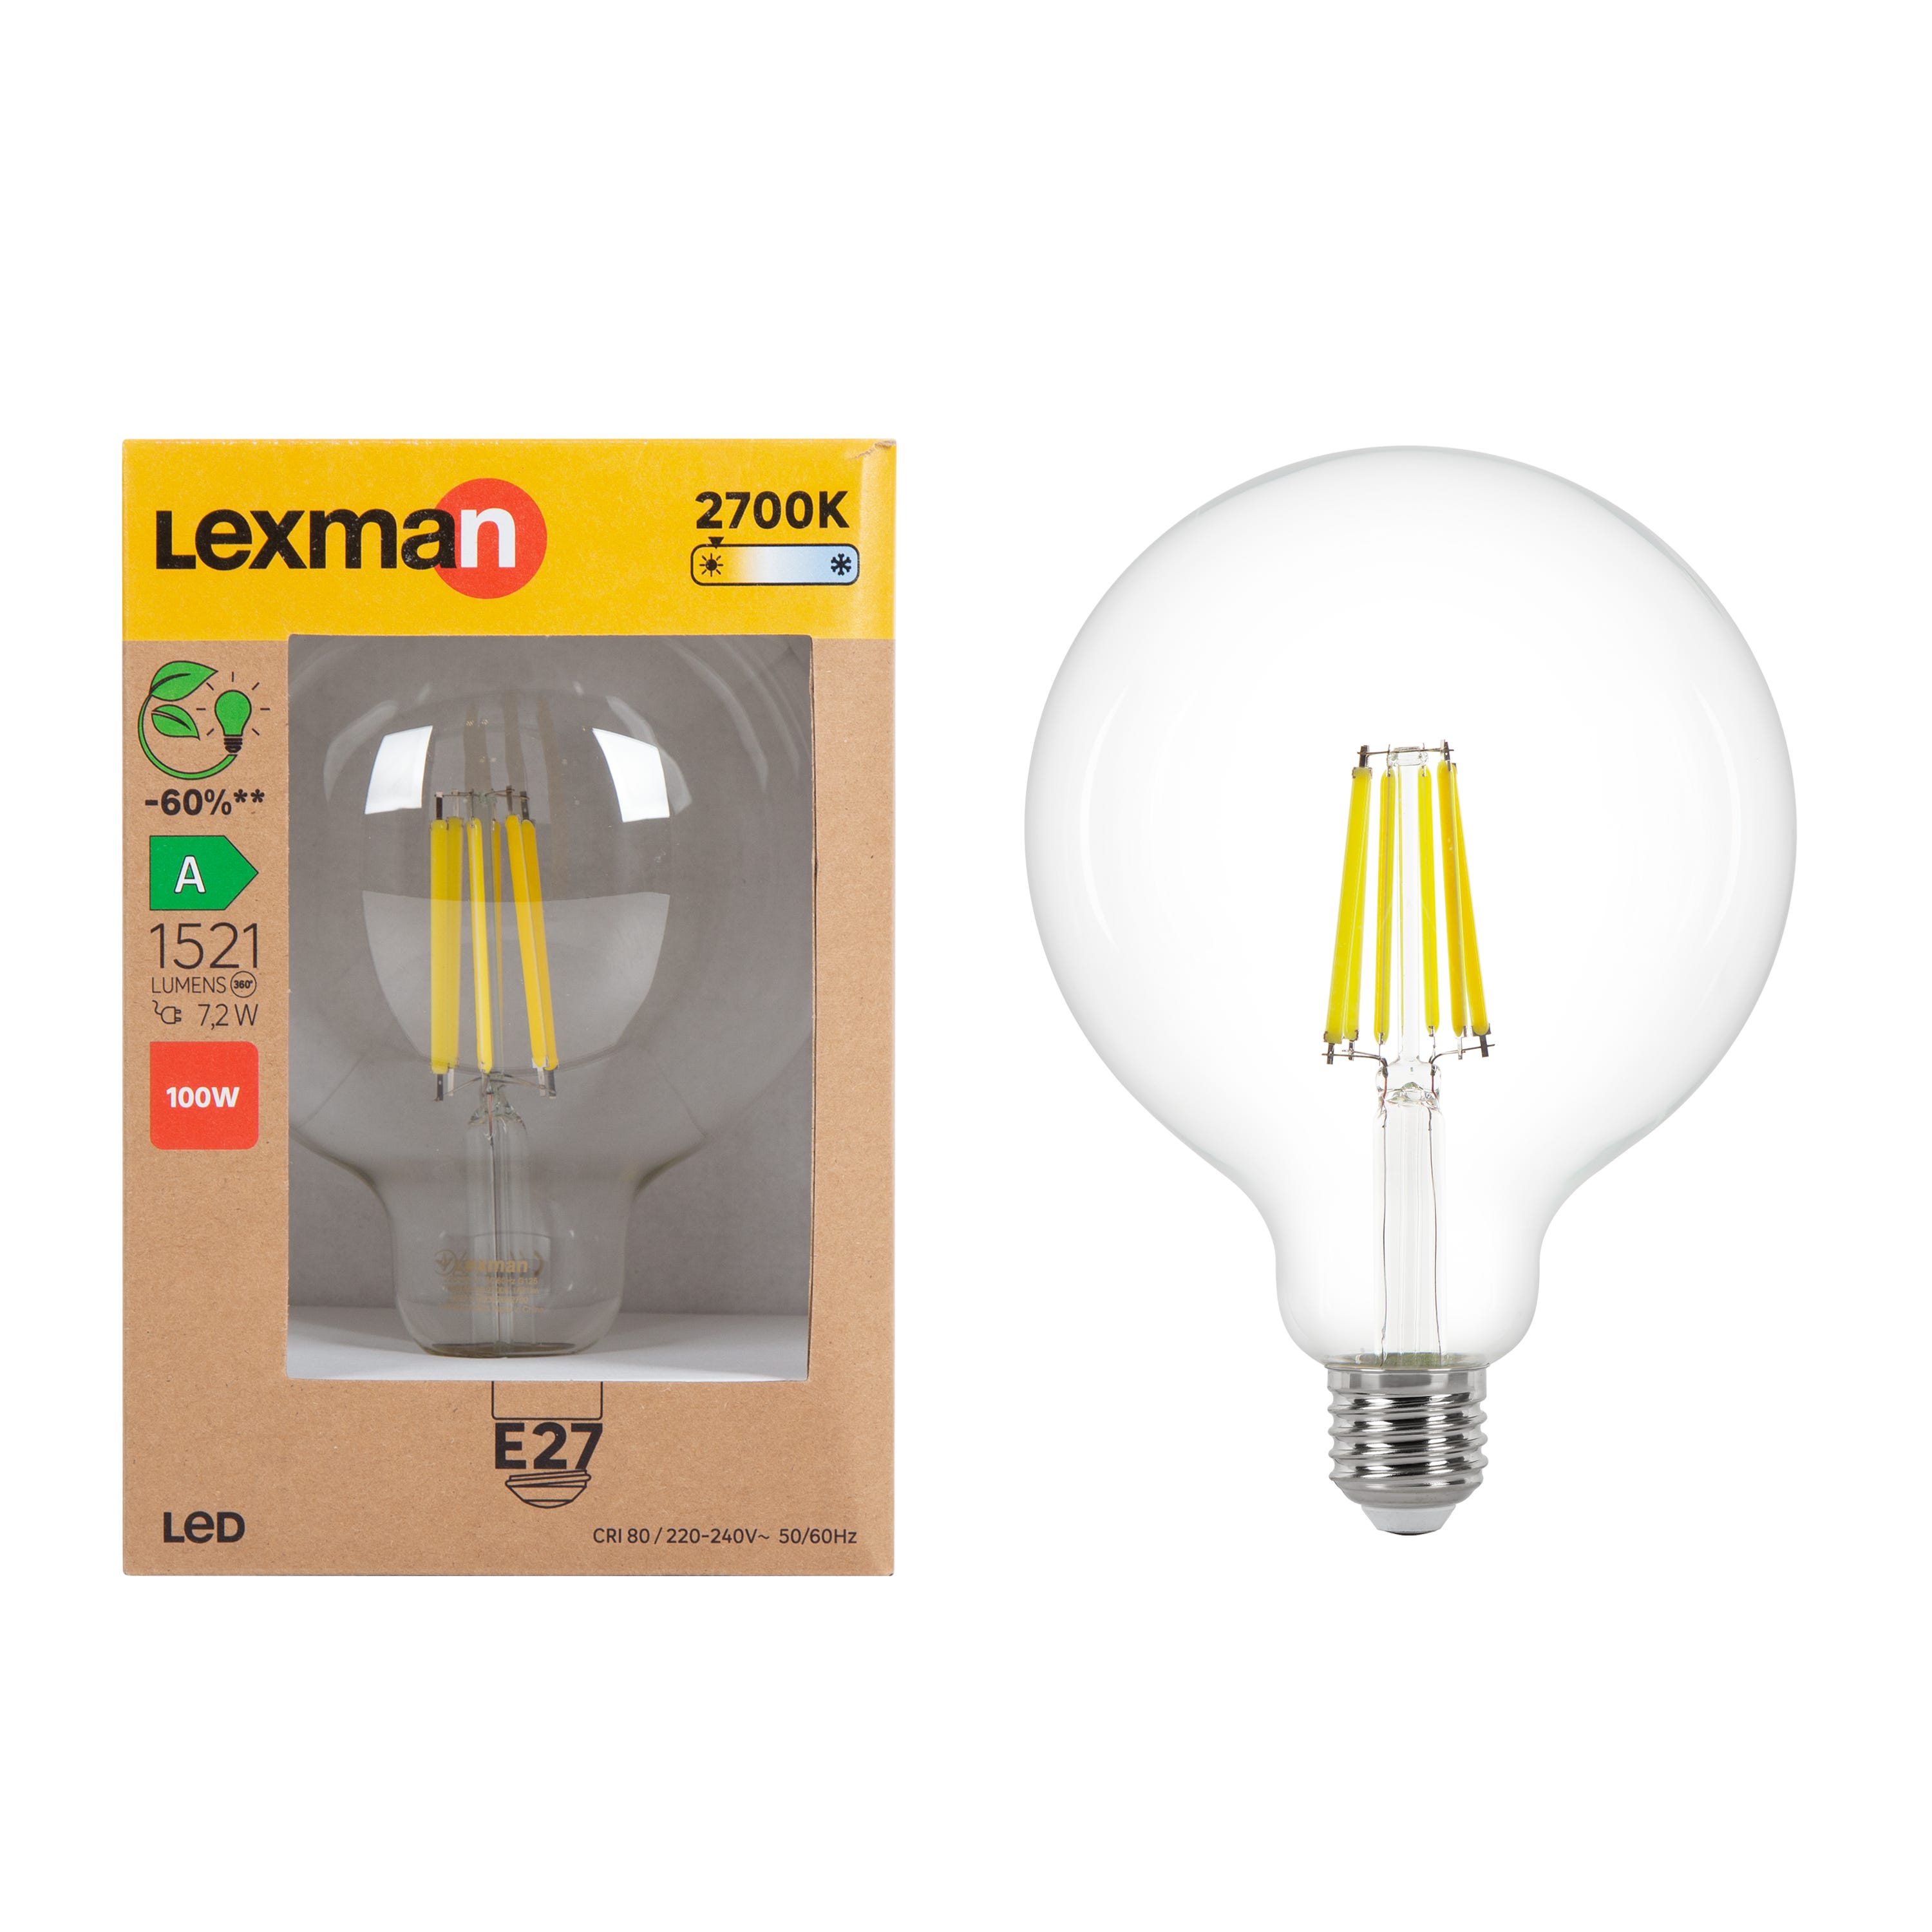 Bombilla LED LEXMAN filamento casquillo E14 de 2700 K